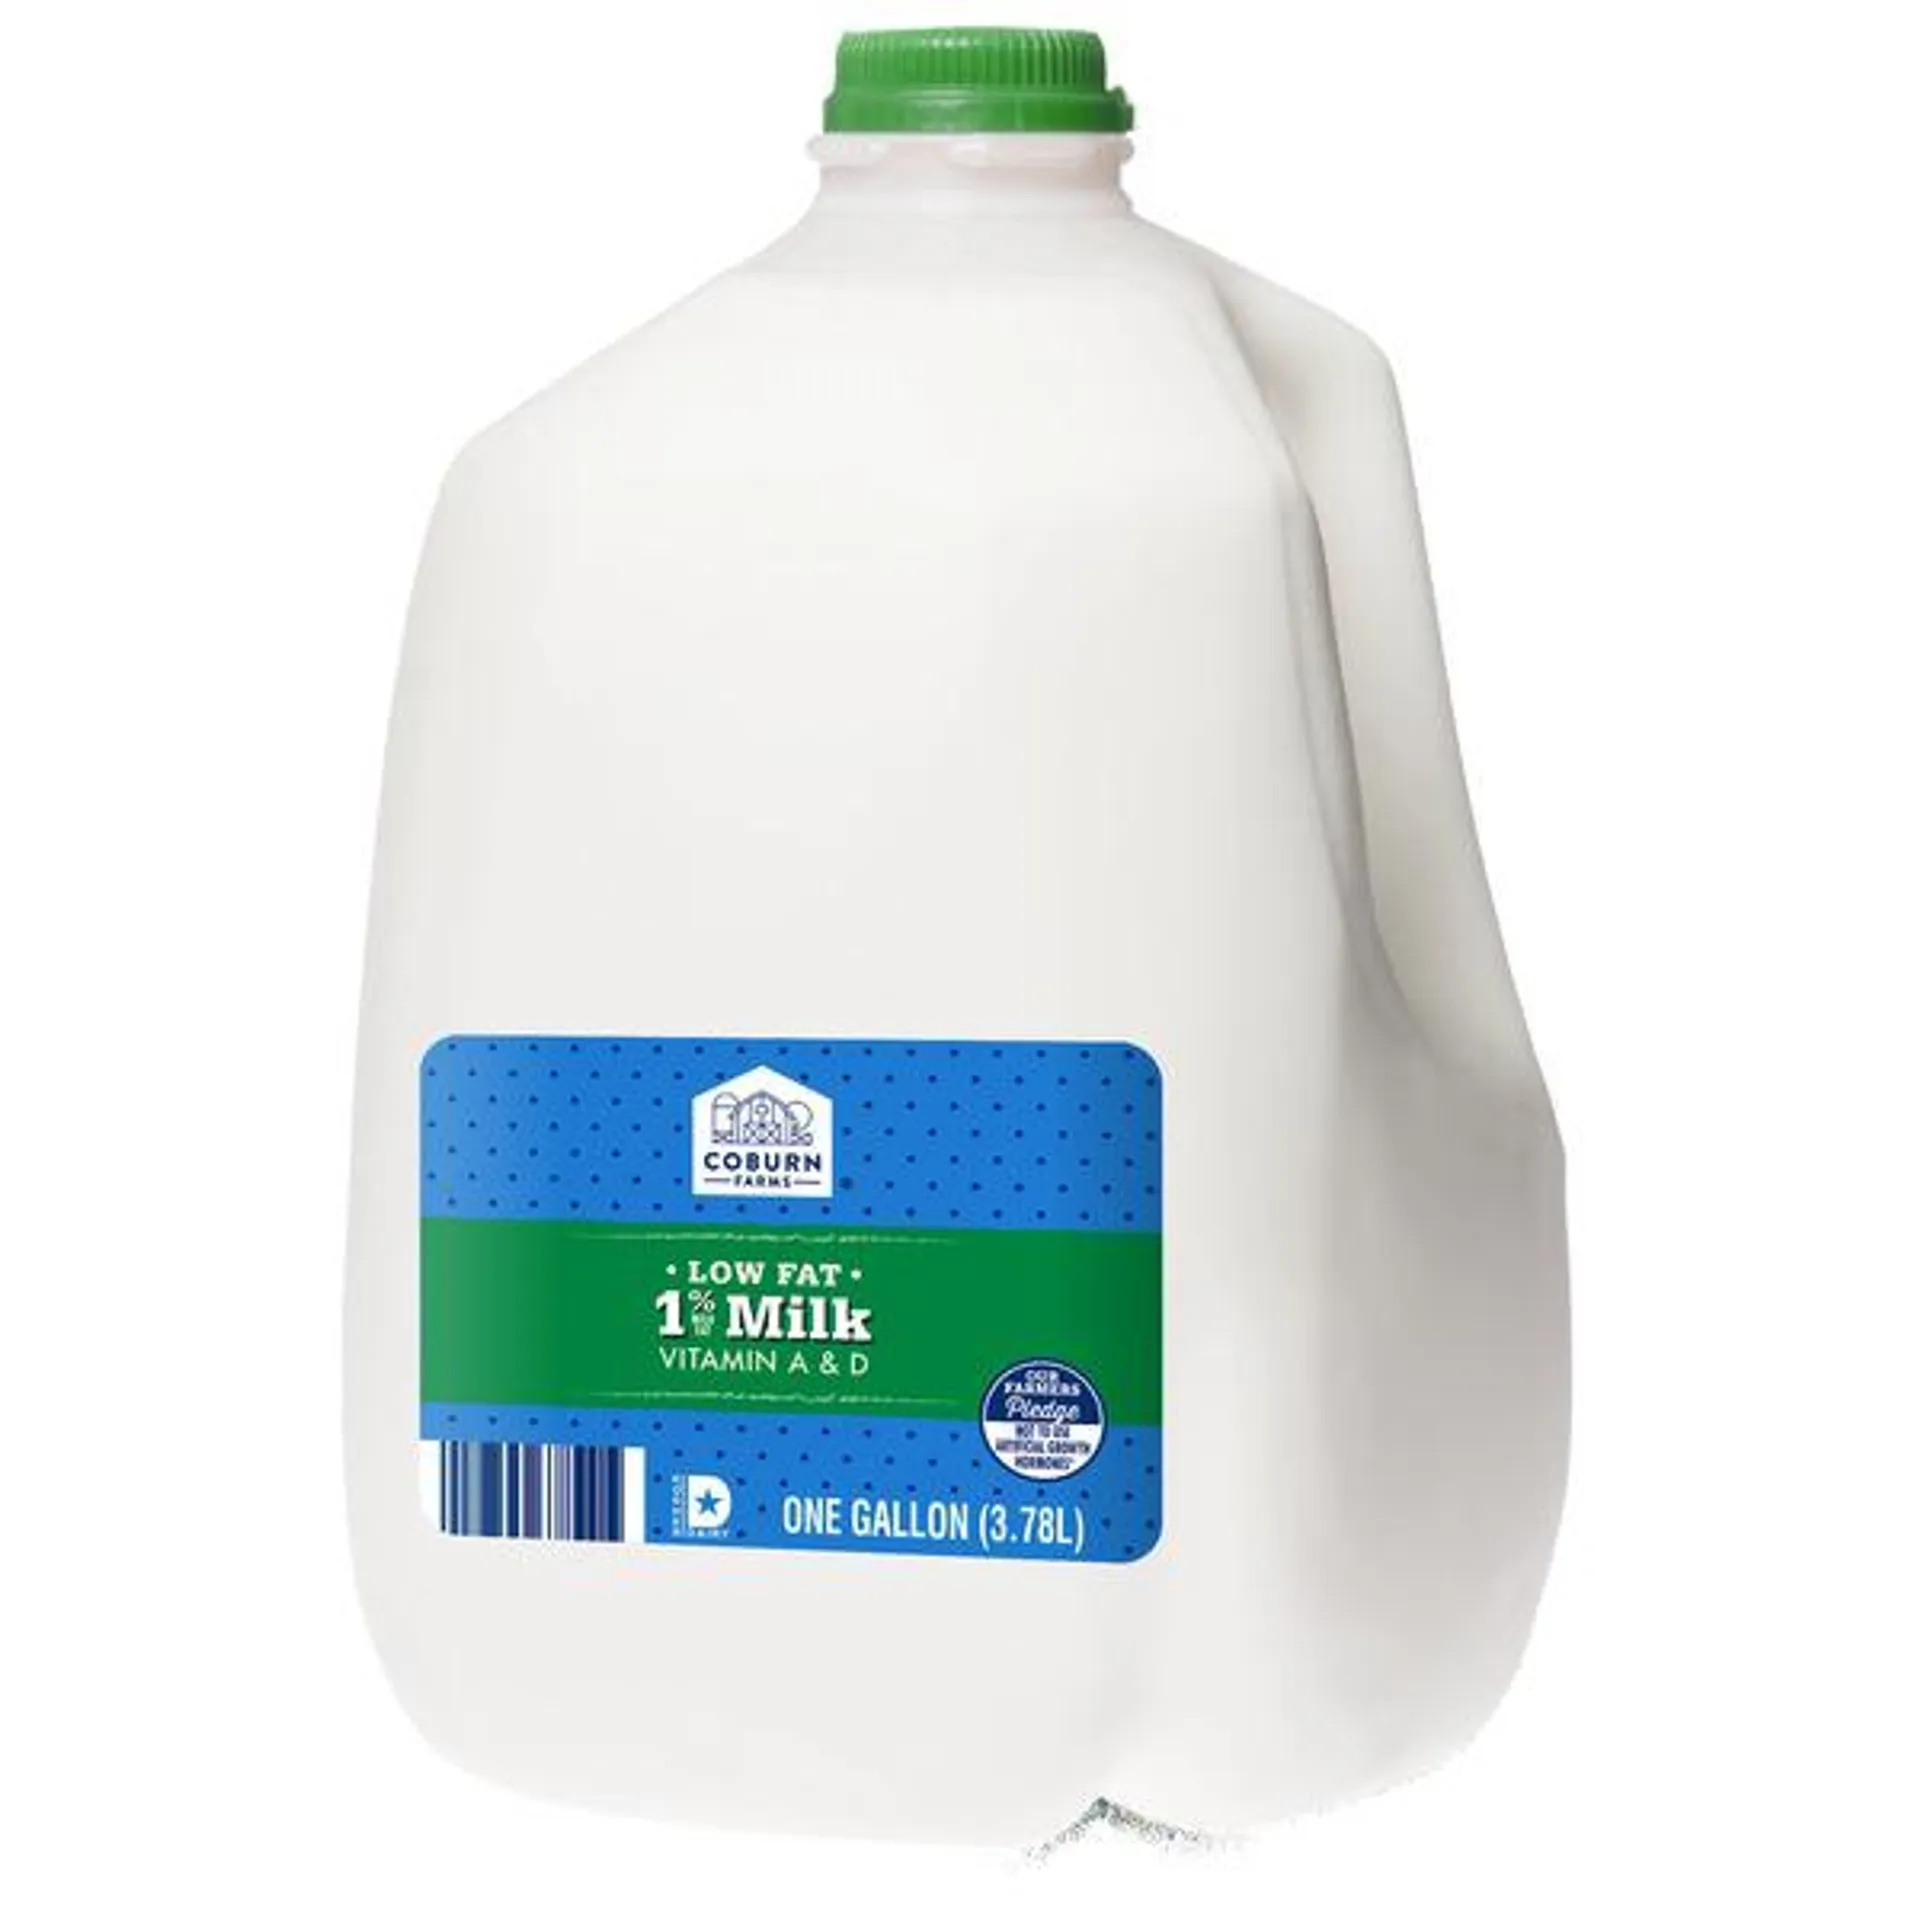 Coburn Farms 1% Lite Milk Gallon